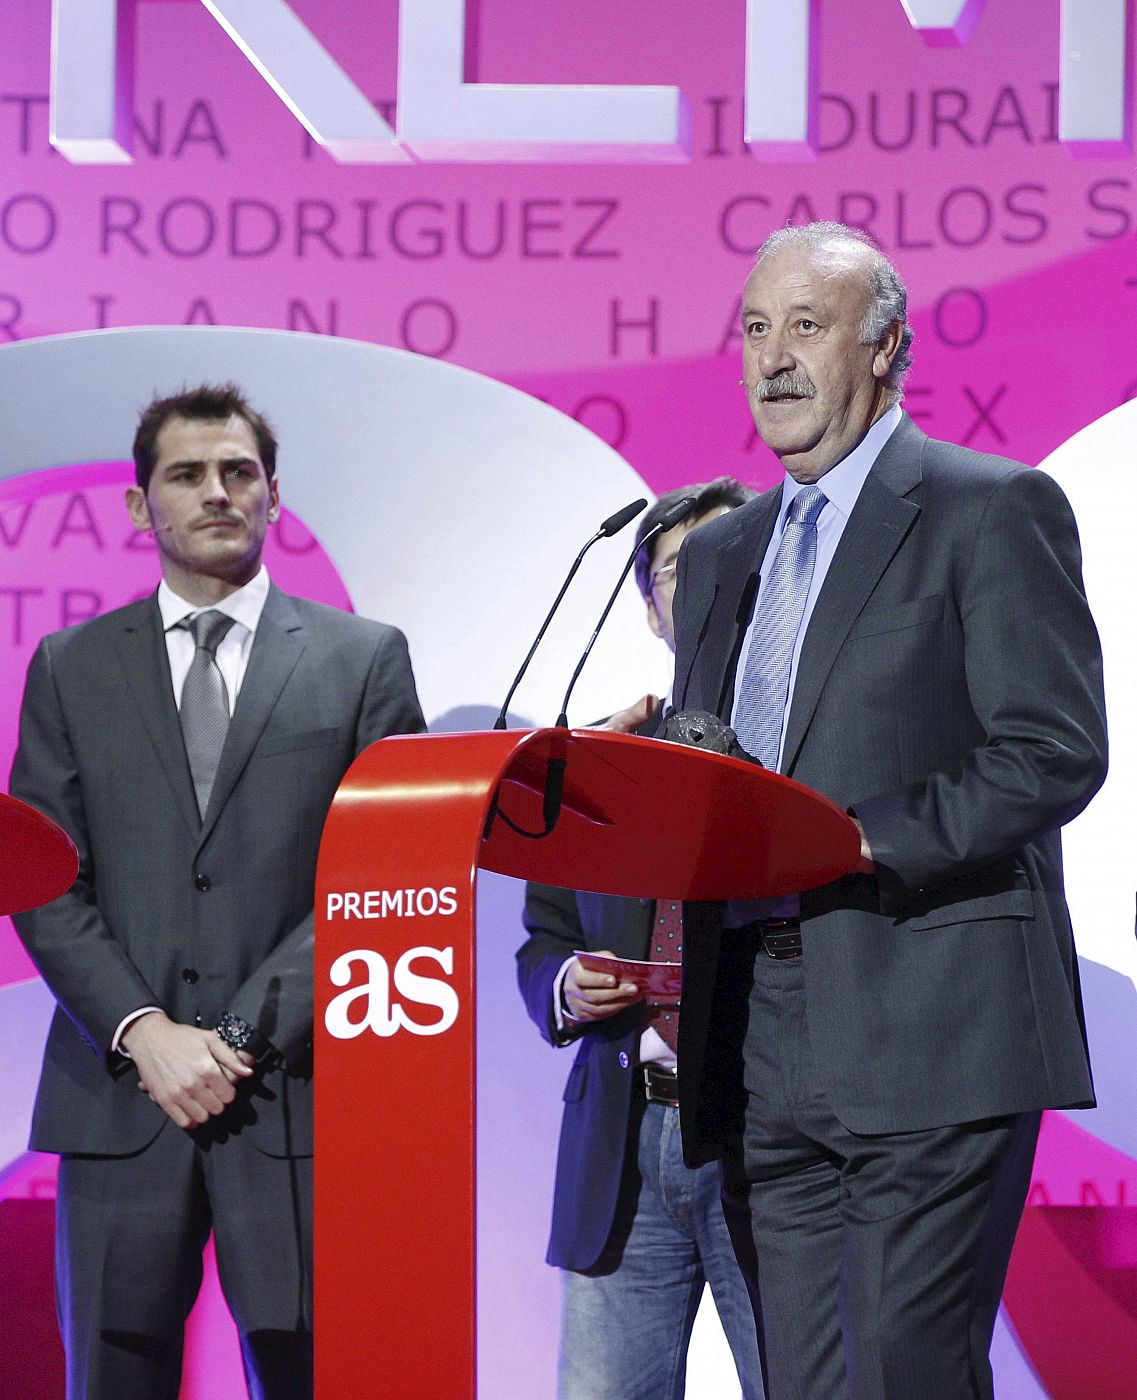 Vicente del Bosque (d), acompañado por el capitan Iker Casillas, tras recibir el premio AS del deporte.